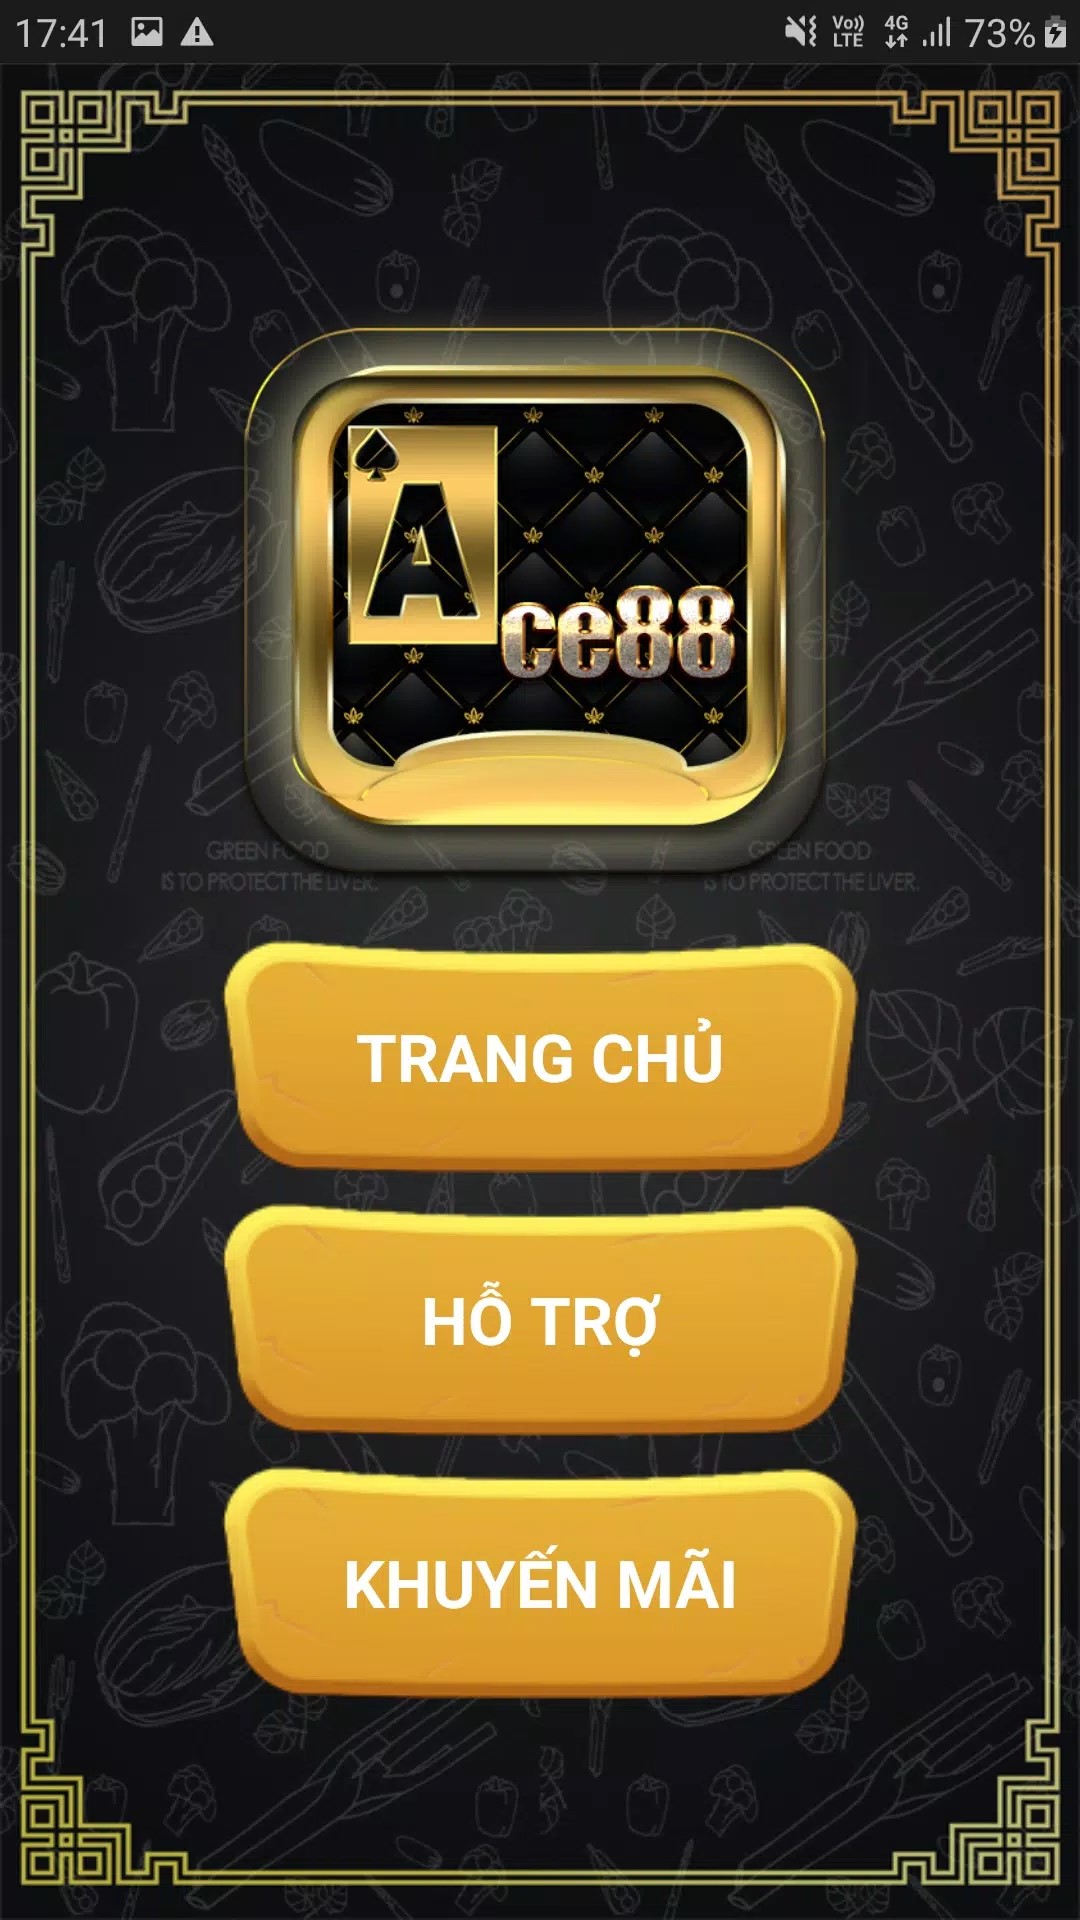 ACe88 - Cổng game được nhiều tay chơi lựa chọn bậc nhất hiện nay.